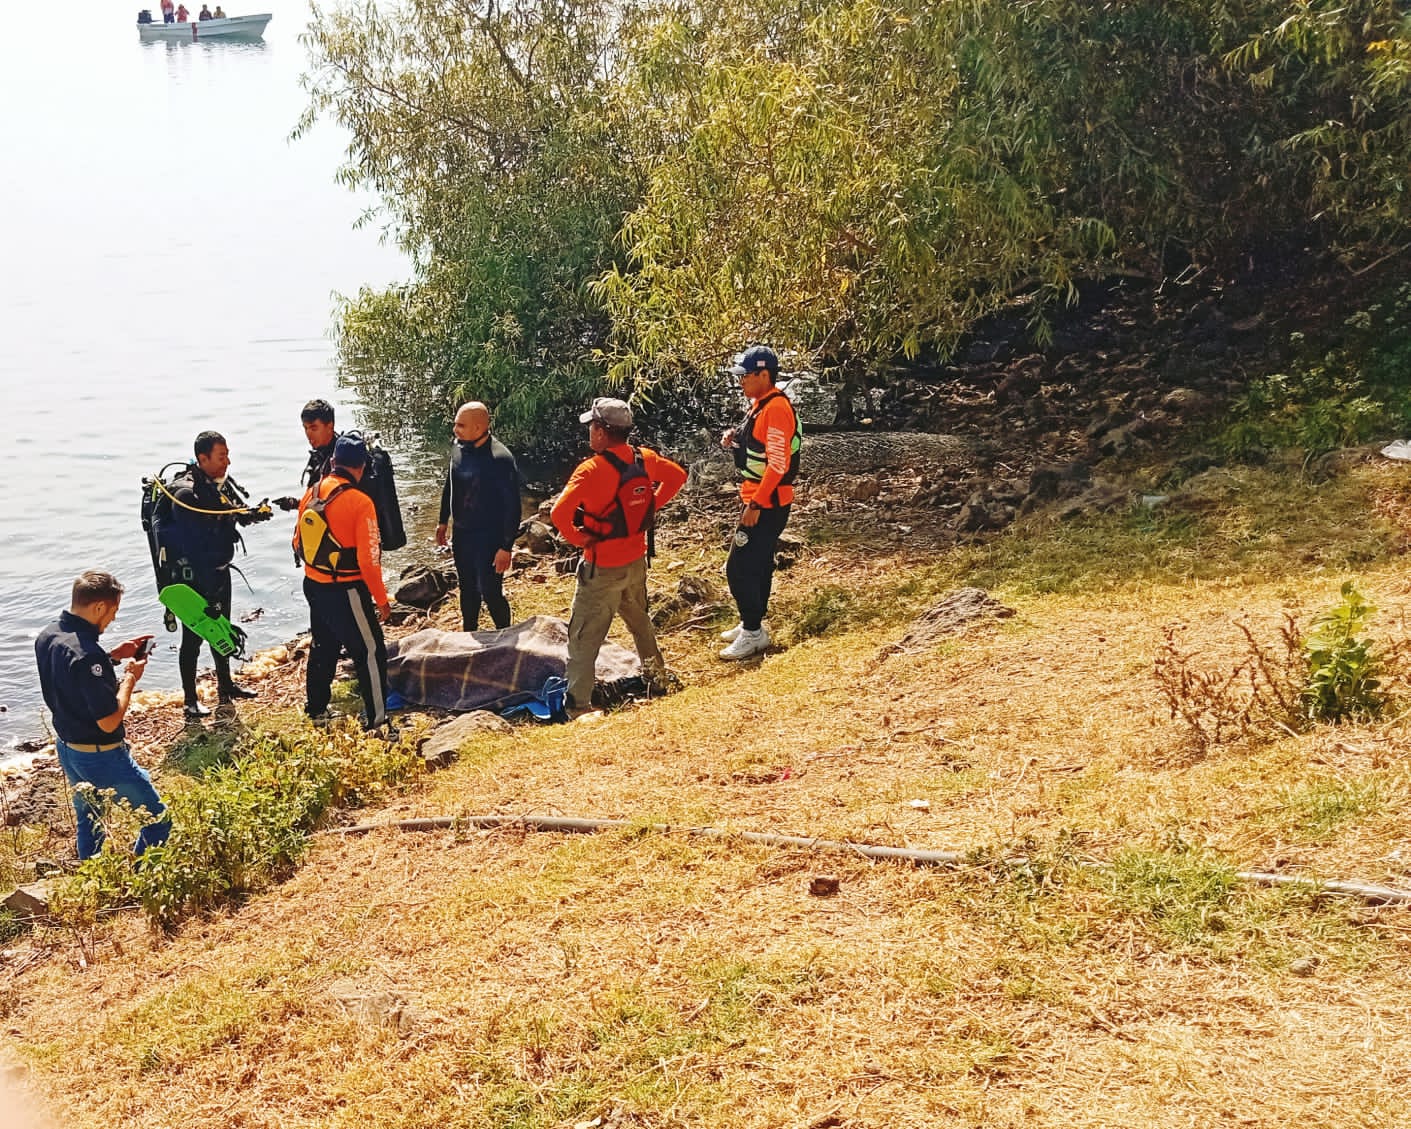 Desenlace trágico en el Lago de Zirahuén: encuentran sin vida al joven desaparecido